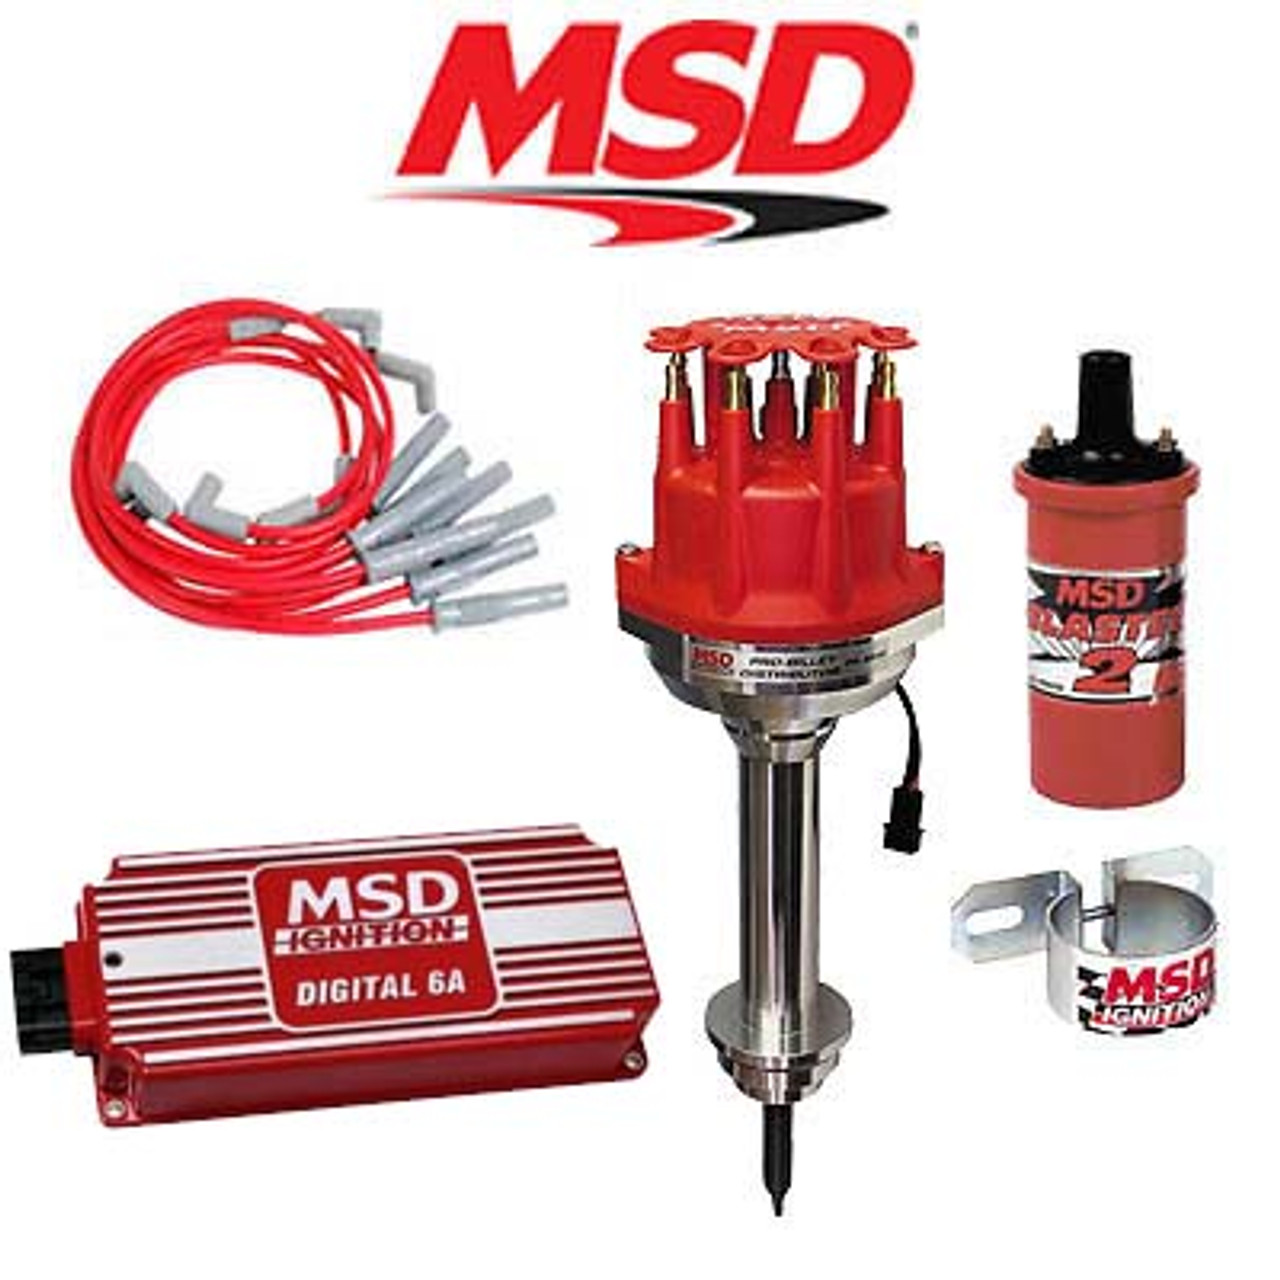 MSD Ignition Kit - Digital 6A/Distributor/Wires/Coil/Bracket - Chrysler 383-400